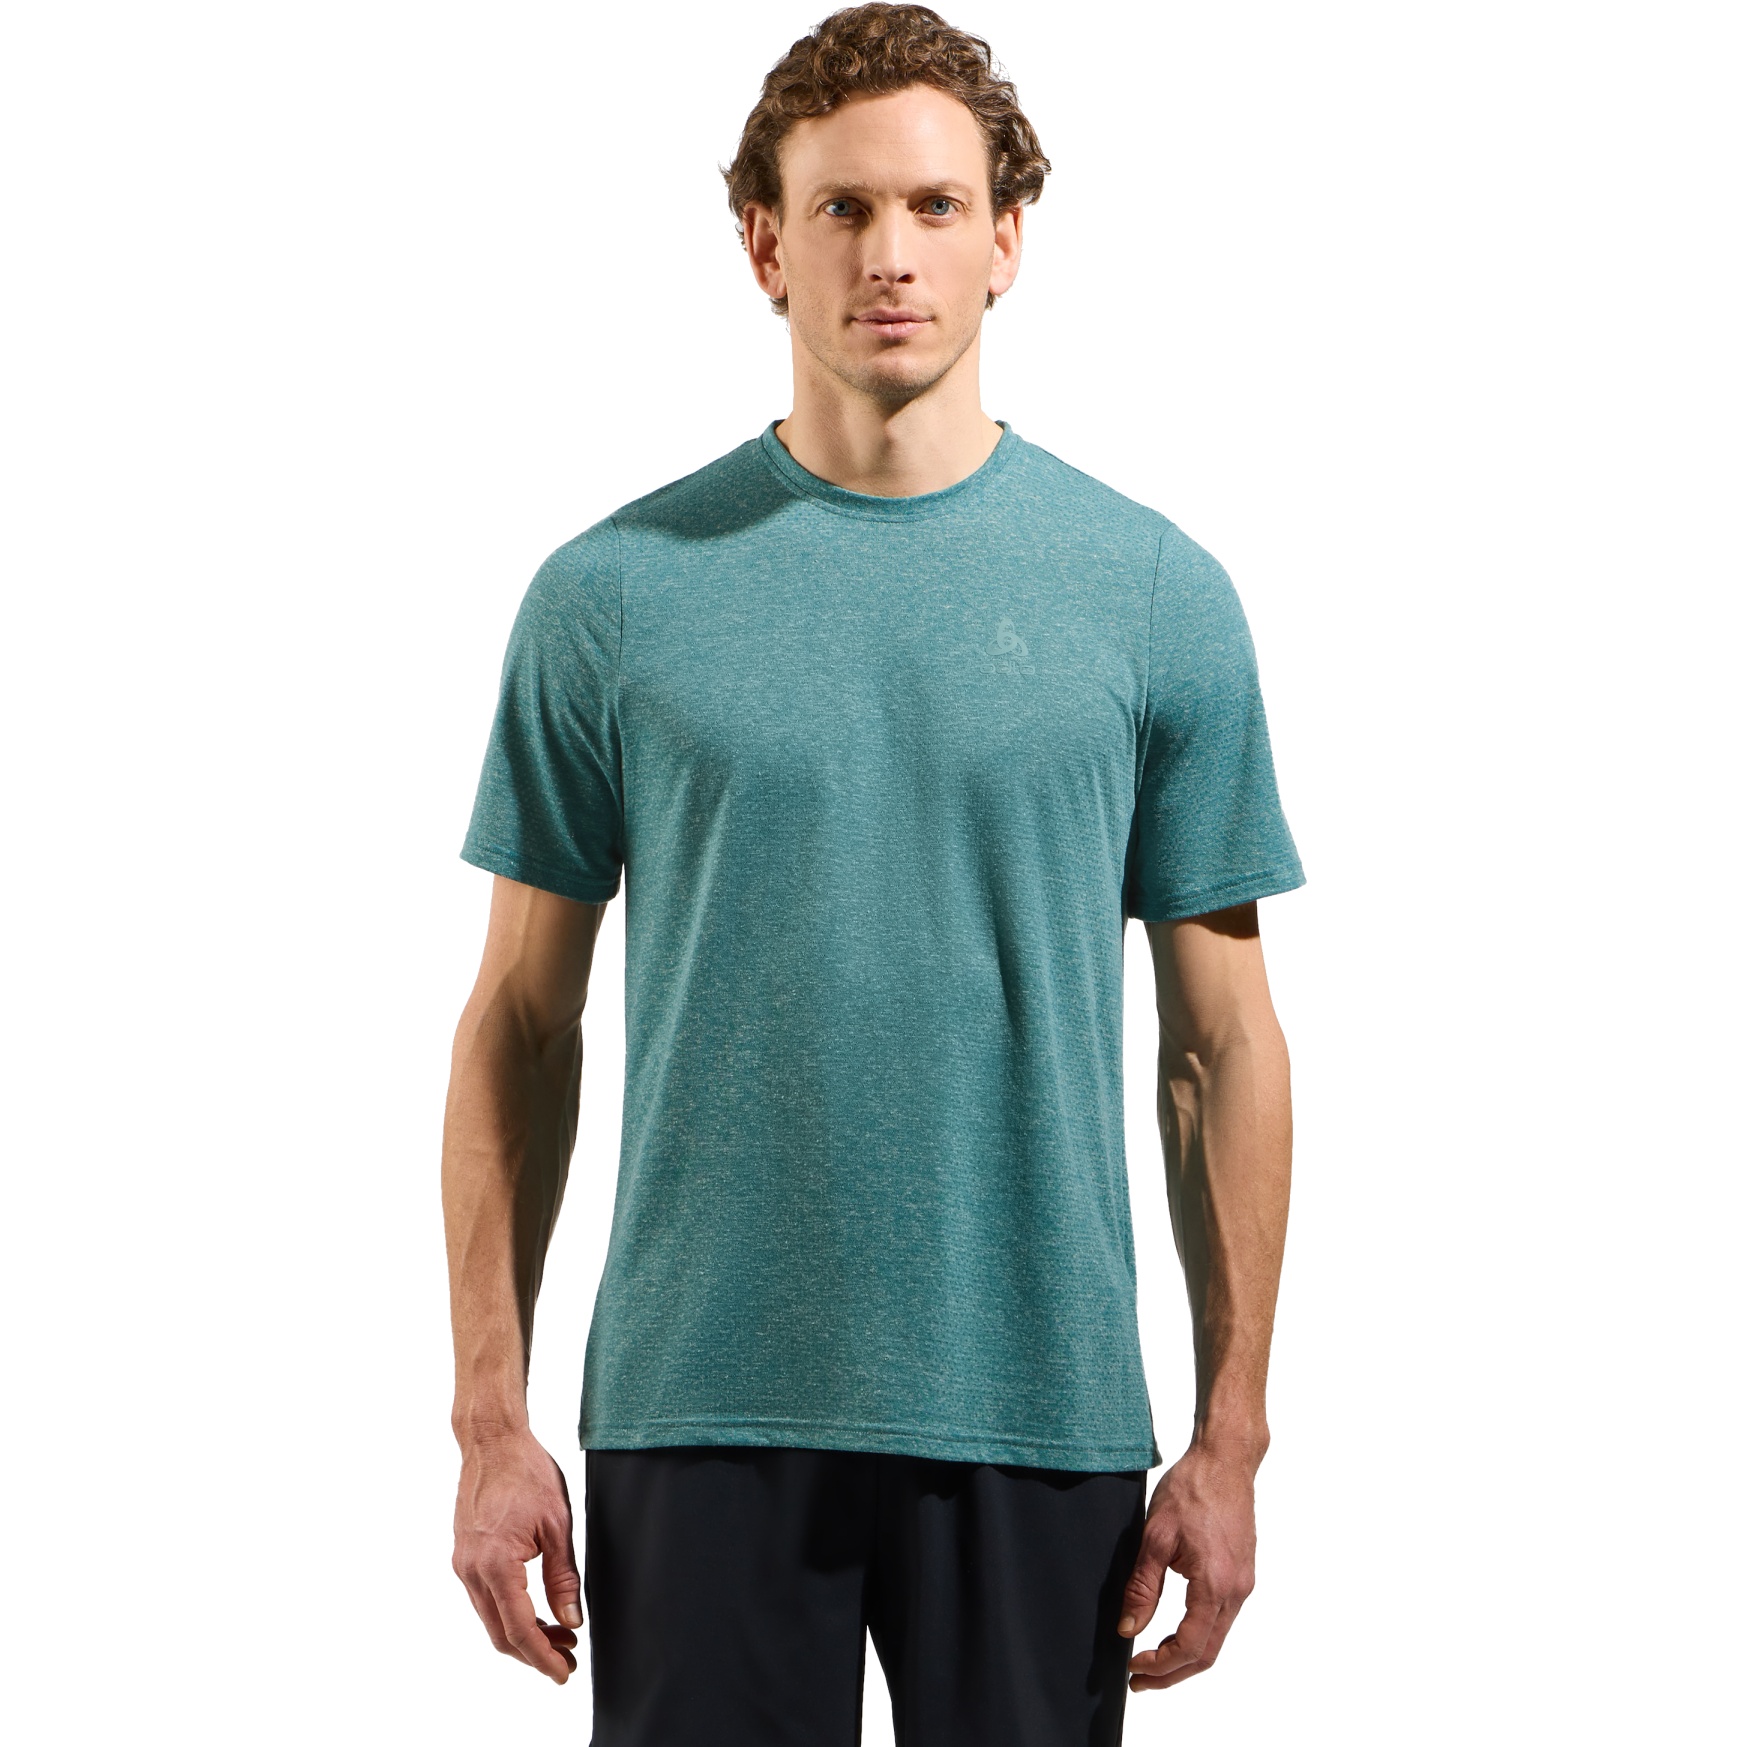 Produktbild von Odlo Active 365 Linencool T-Shirt Herren - arctic melange